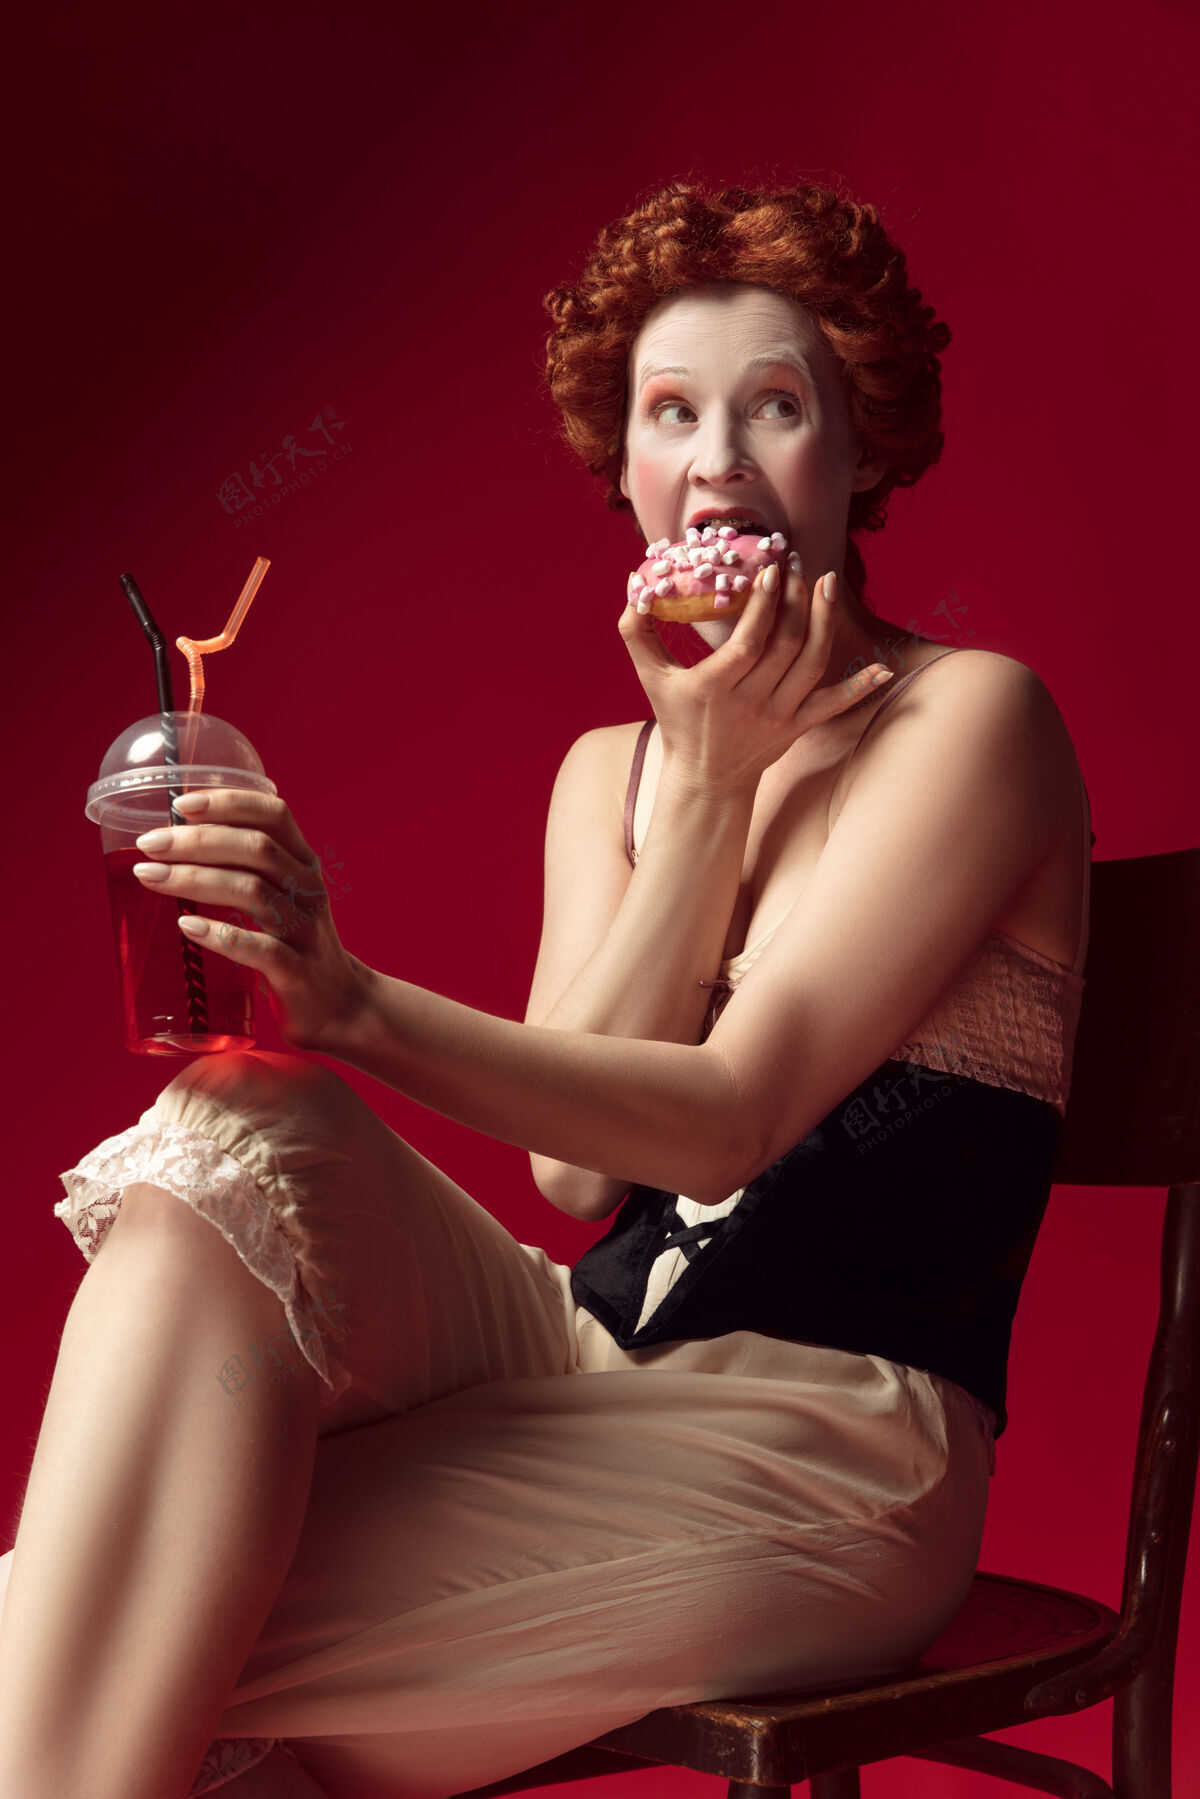 骄傲中世纪的红发女公爵 身穿黑色紧身衣和睡衣 坐在红色空间的椅子上 喝着饮料和甜甜圈礼服文艺复兴情感